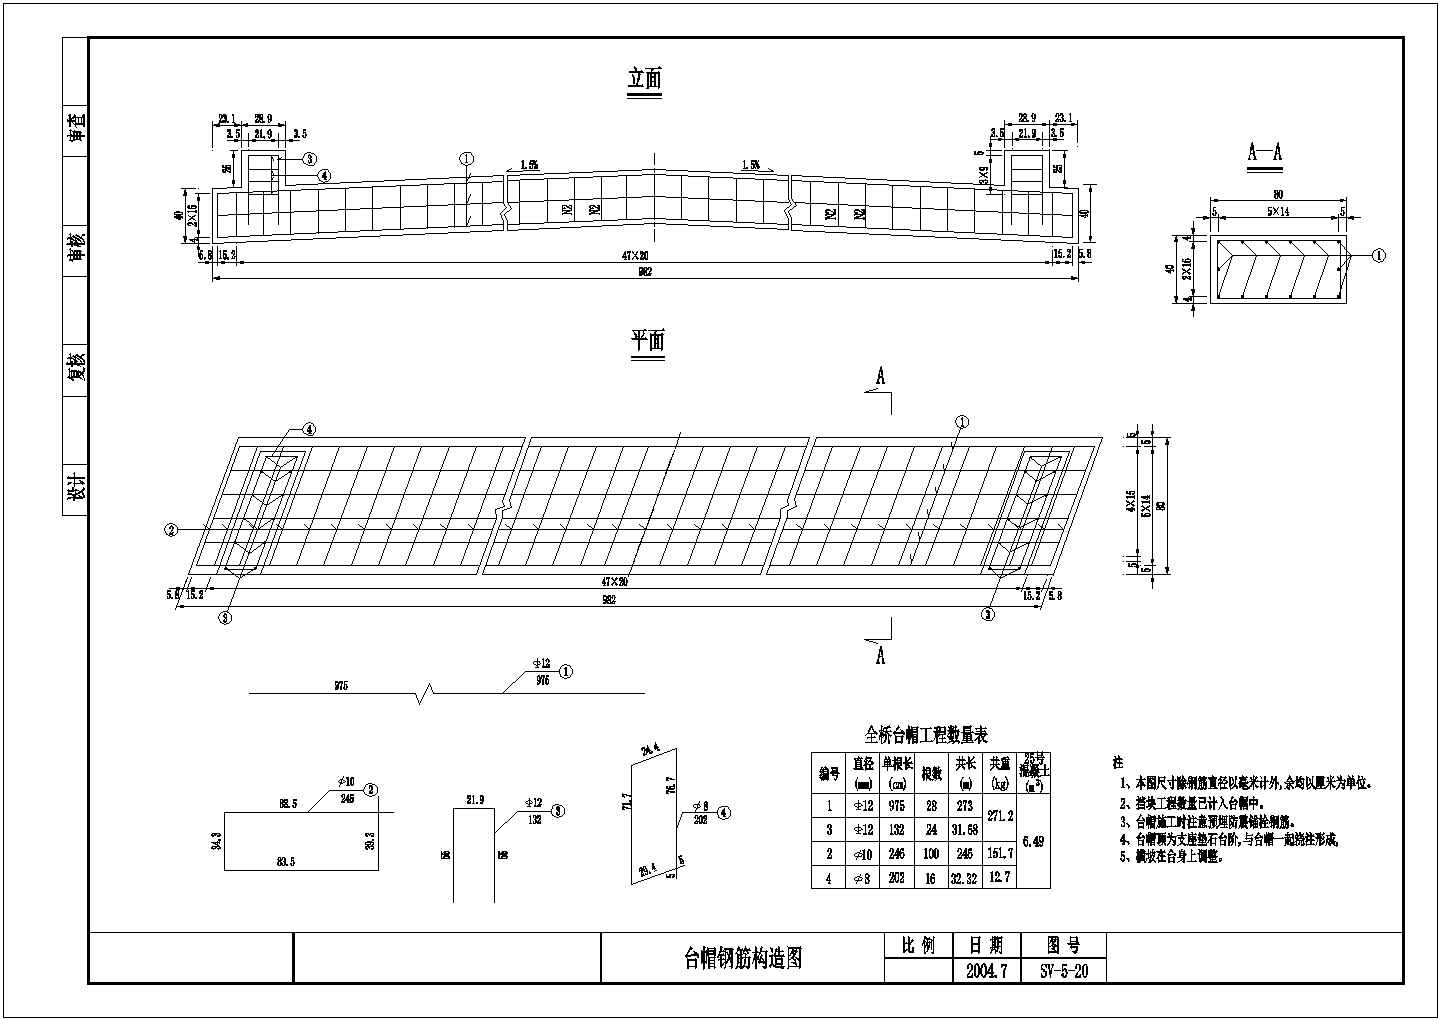 钢筋混凝土型U型桥台、重力式桥墩、扩大基础板桥施工图（16-13米）